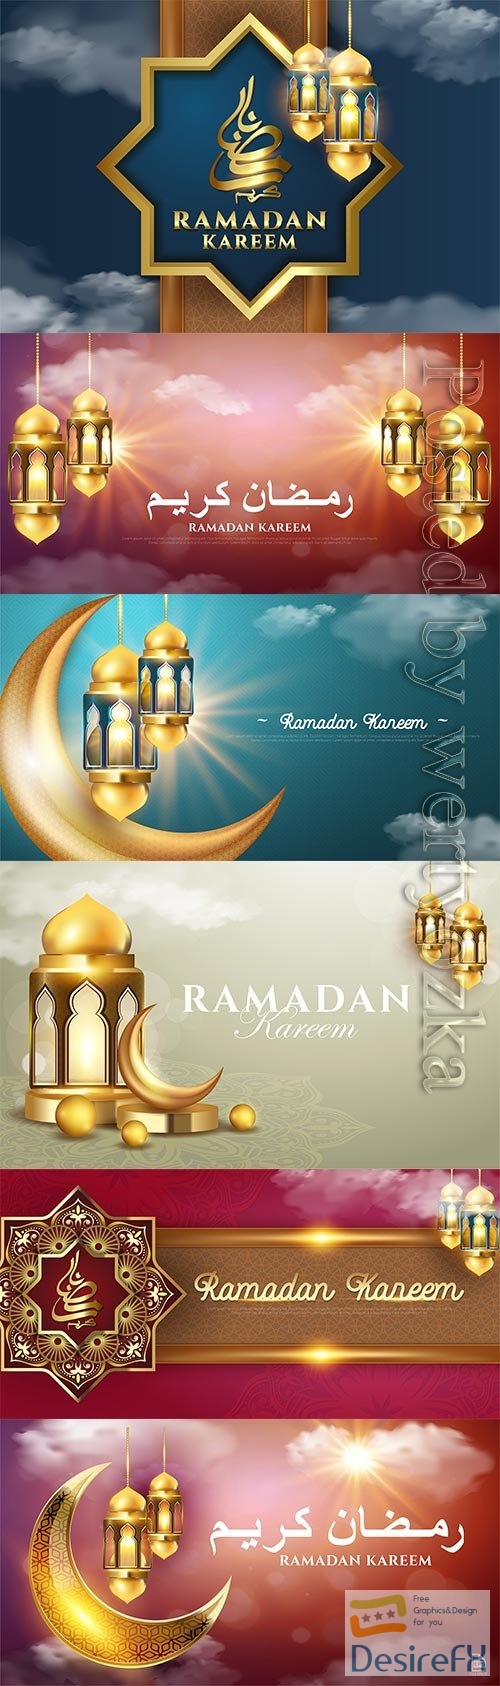 Islamic Ramadan kareem card vector design